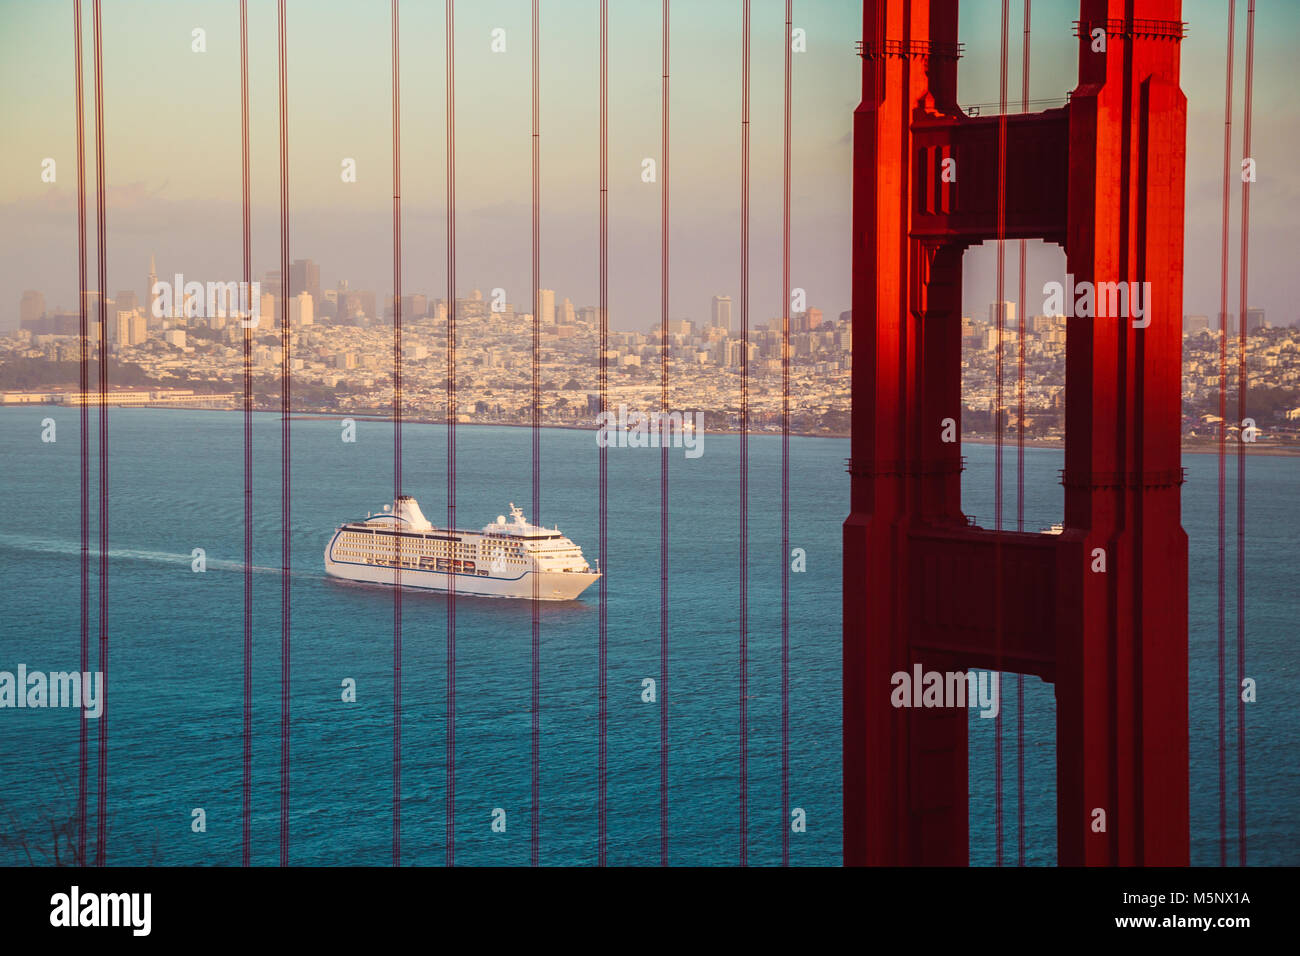 Bateau de croisière au célèbre Golden Gate Bridge avec la skyline de San Francisco en arrière-plan dans la lumière du soir au coucher du soleil d'or, en Californie, USA Banque D'Images